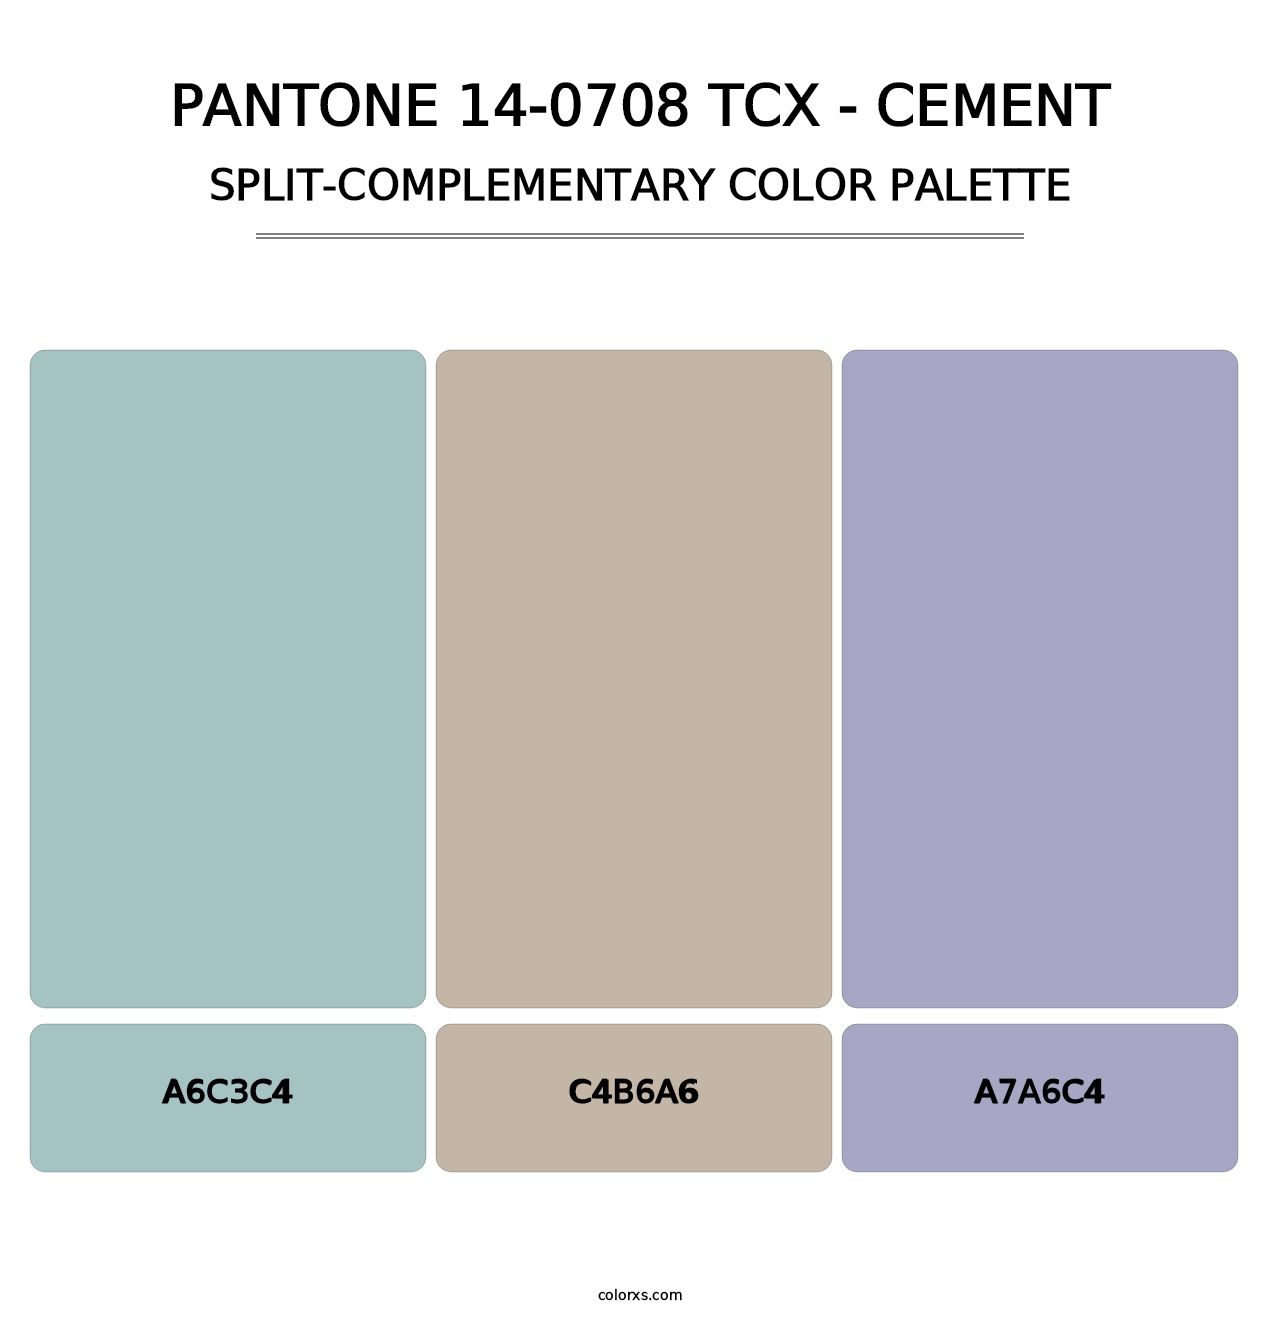 PANTONE 14-0708 TCX - Cement - Split-Complementary Color Palette